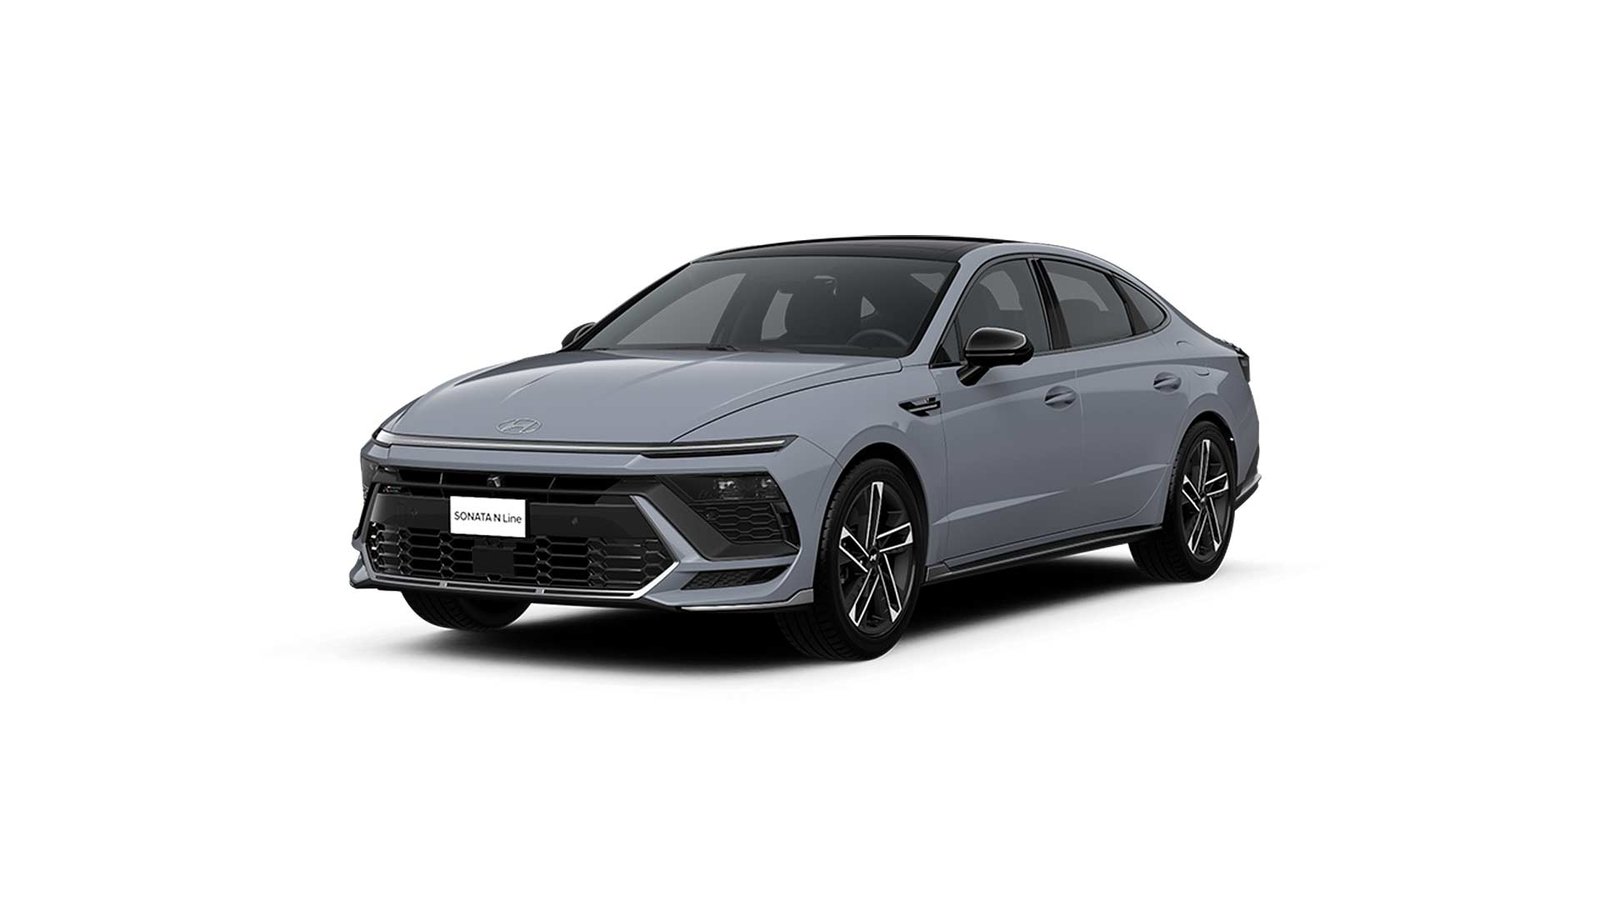 2024 Hyundai Sonata NLine All Color Paint Options Images AUTOBICS